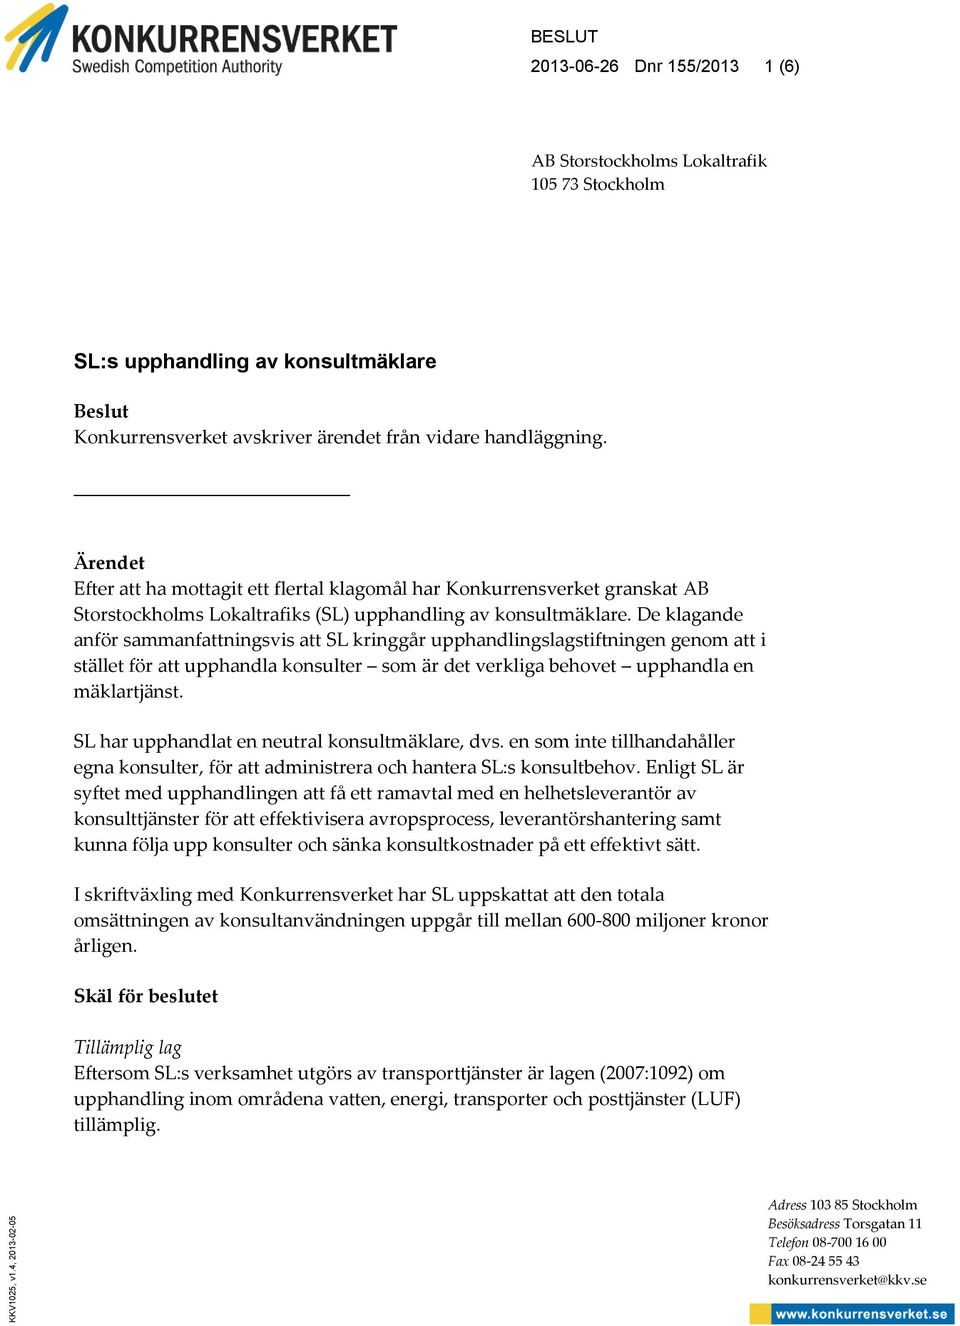 Ärendet Efter att ha mottagit ett flertal klagomål har Konkurrensverket granskat AB Storstockholms Lokaltrafiks (SL) upphandling av konsultmäklare.